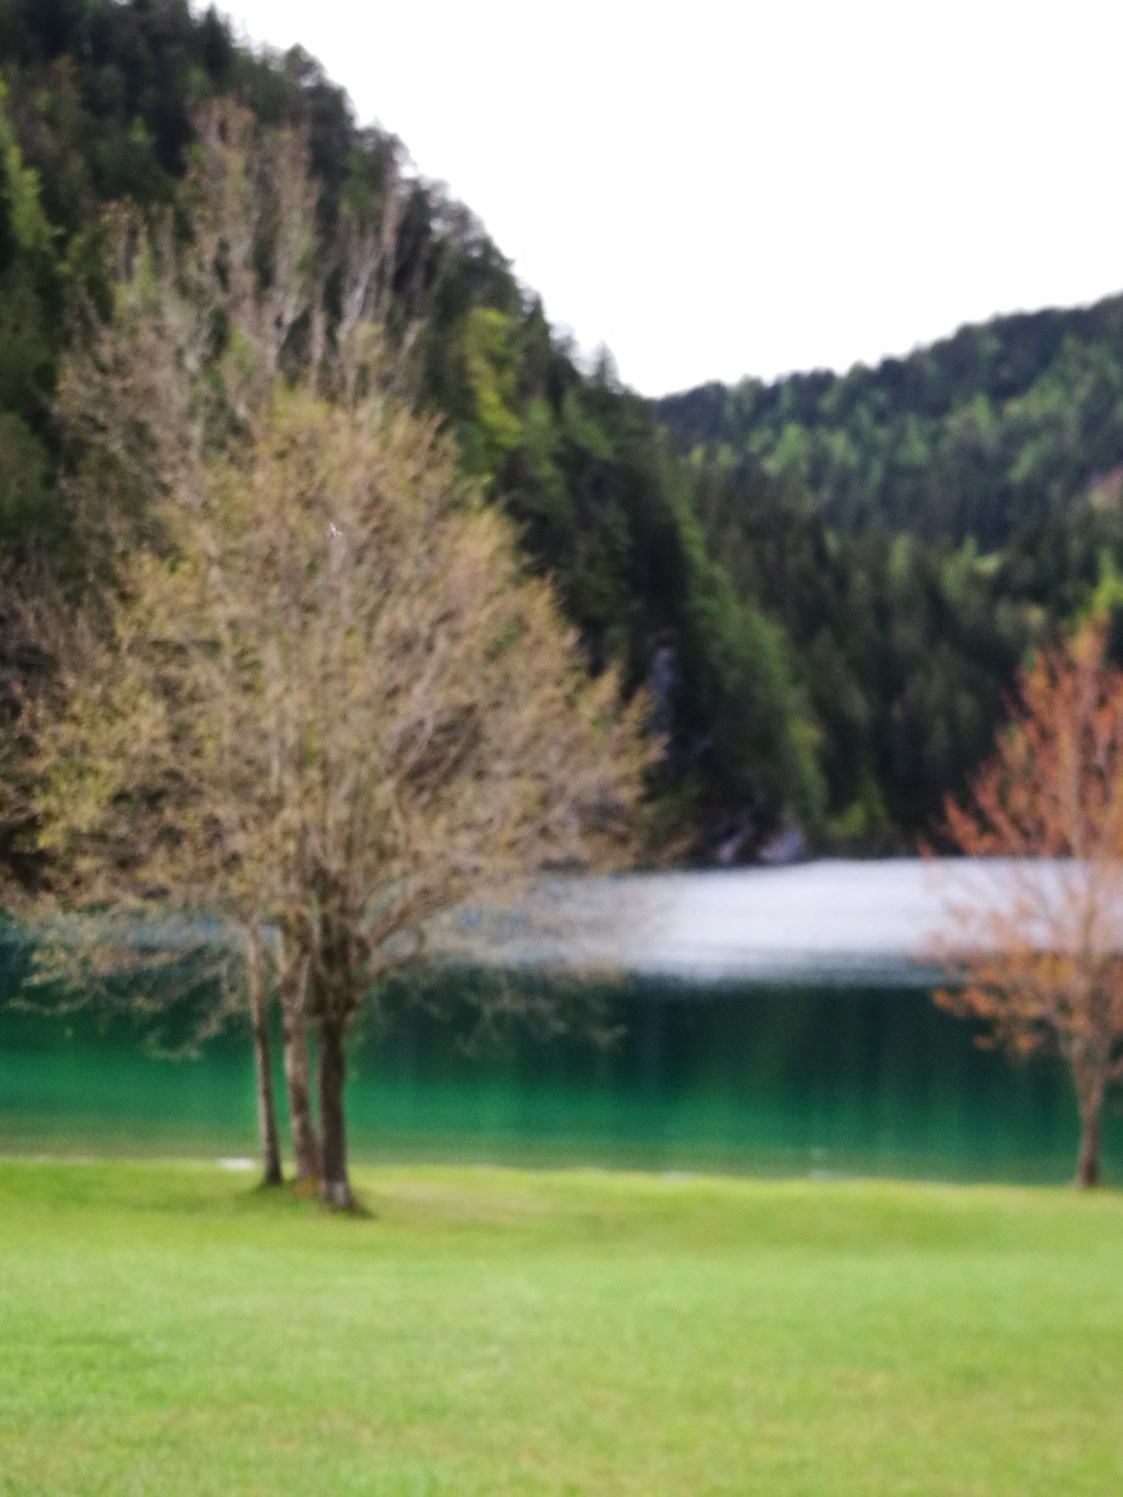 Ausflugsziel: Naturbadesee Hintersteiner See